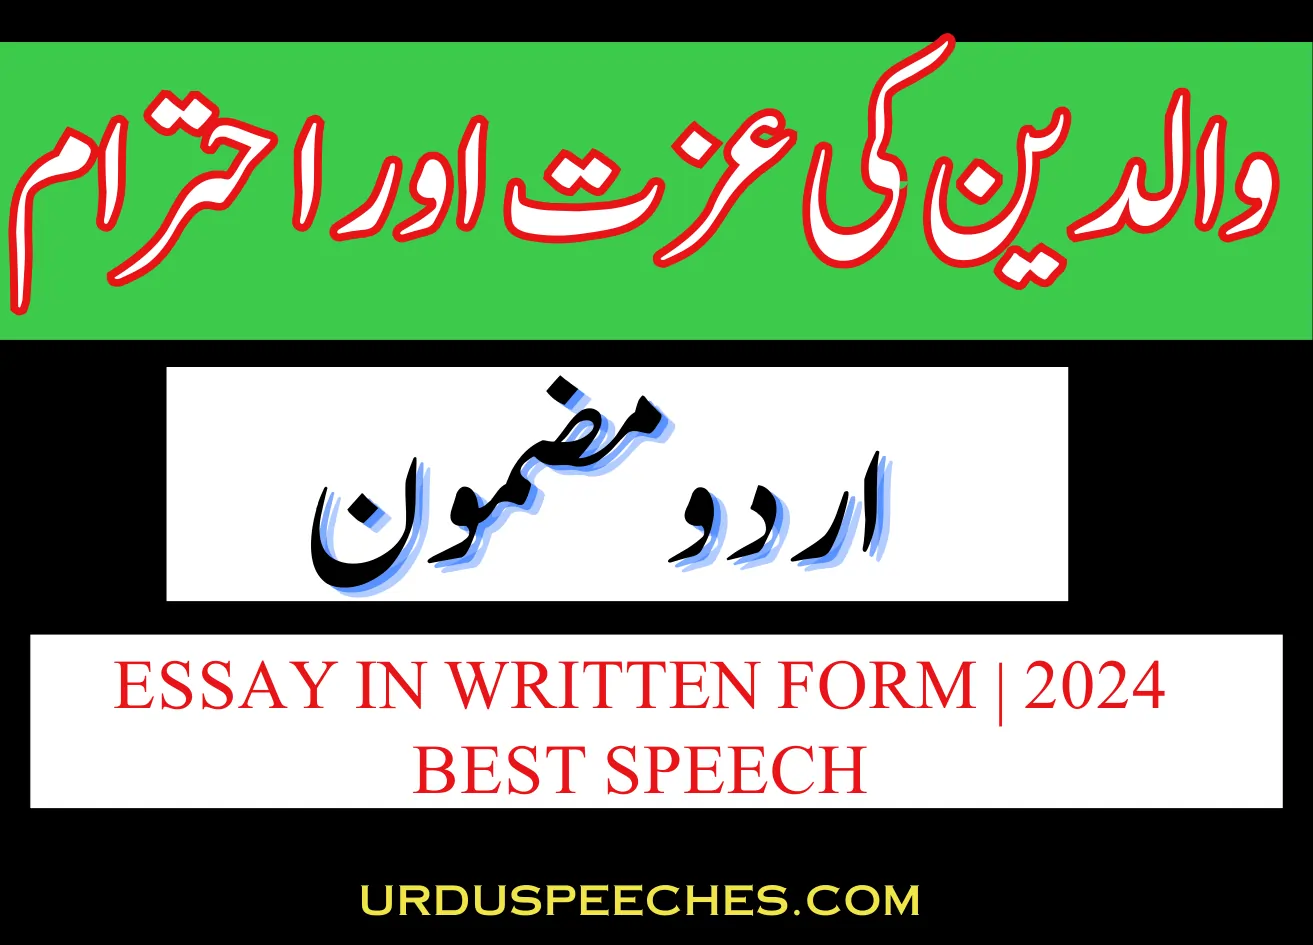 Waldain ki Izzat Ehtaram Essay in Urdu